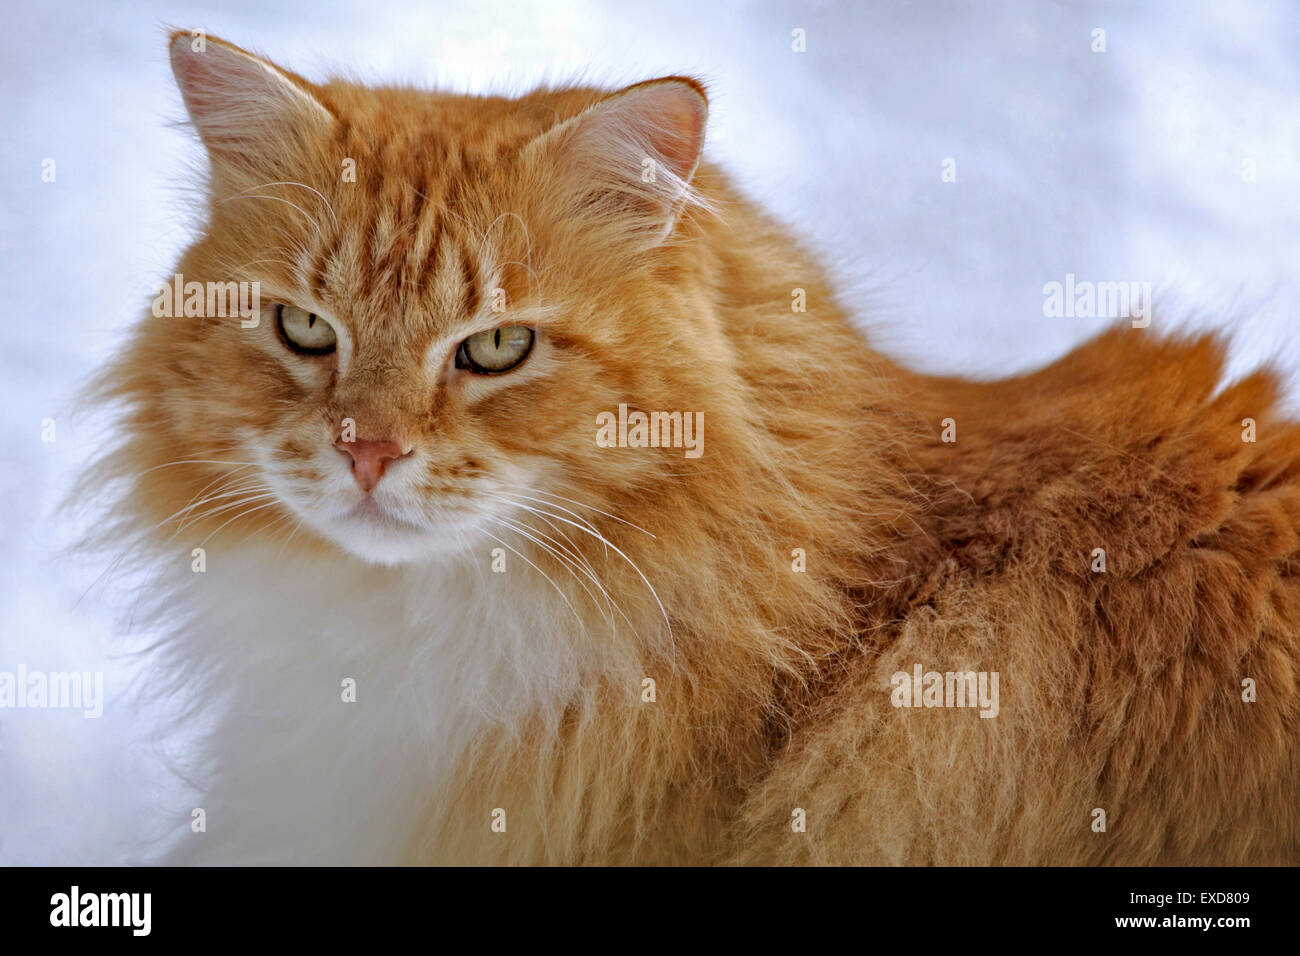 Tomcat orange gestromt draußen n Schnee, Porträt, Nahaufnahme Stockfoto